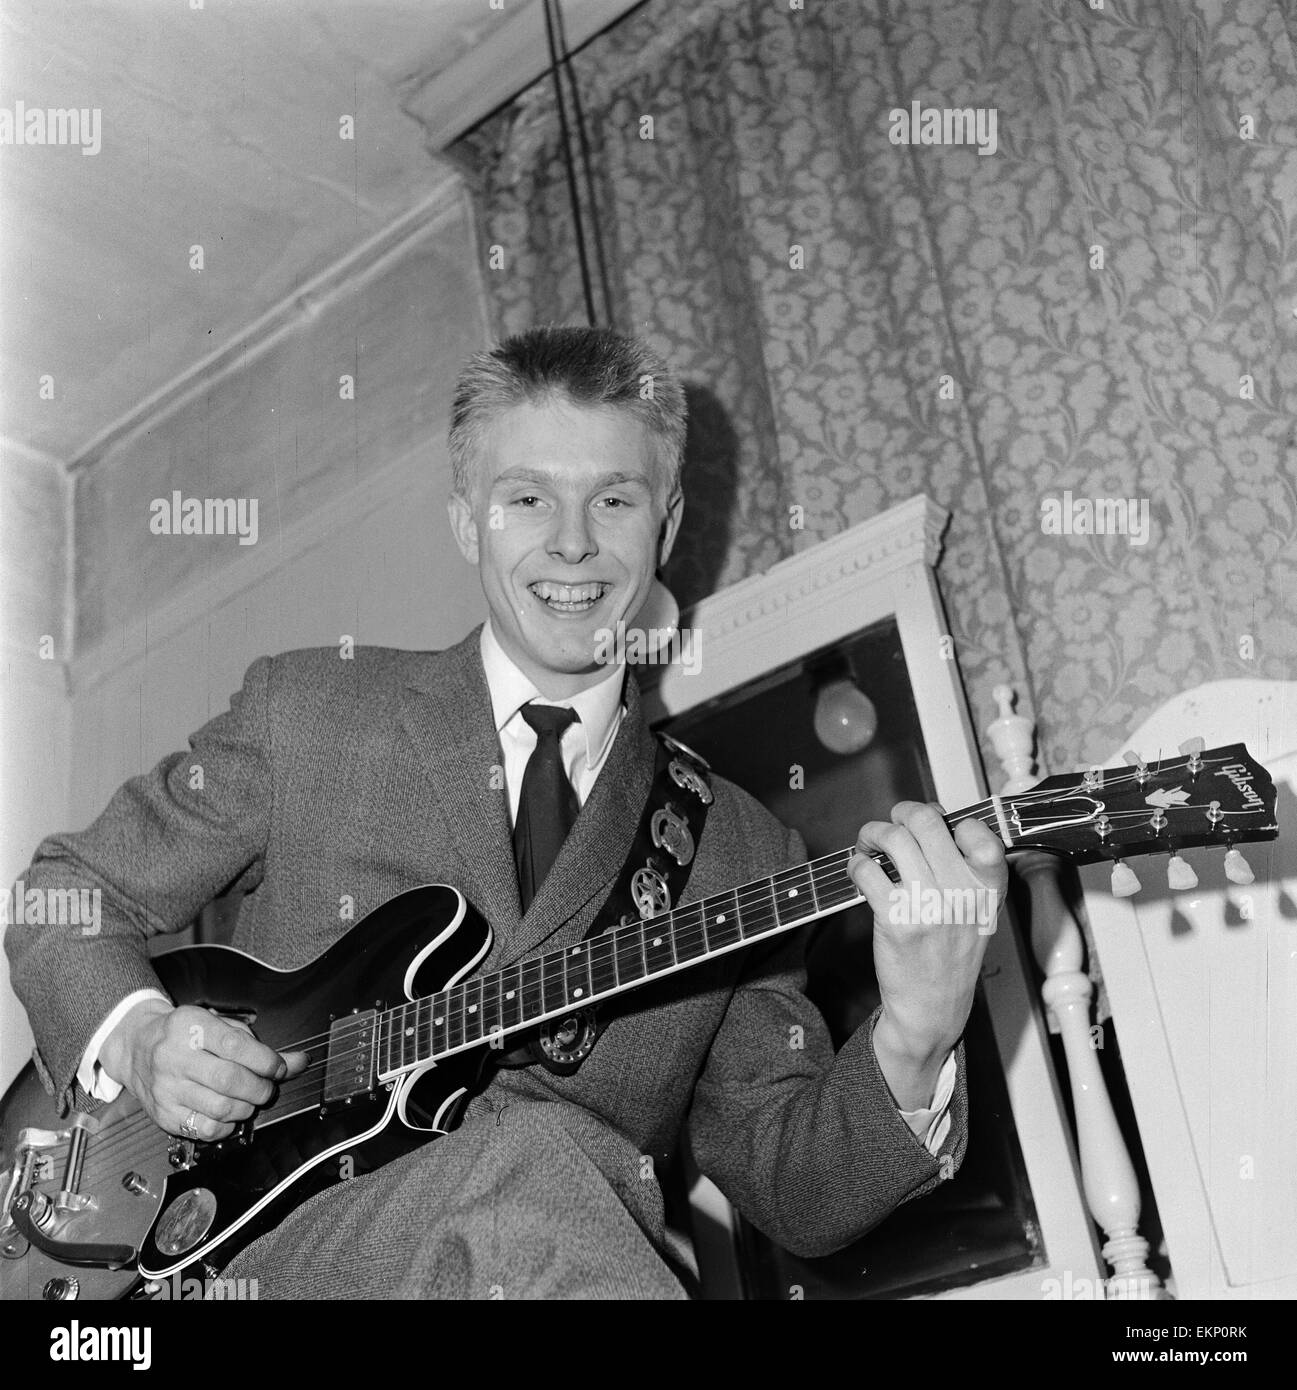 Singer Joe Brown at 'Idols on parade' show at the Hippodrome, Manchester. 16th November 1960. Stock Photo